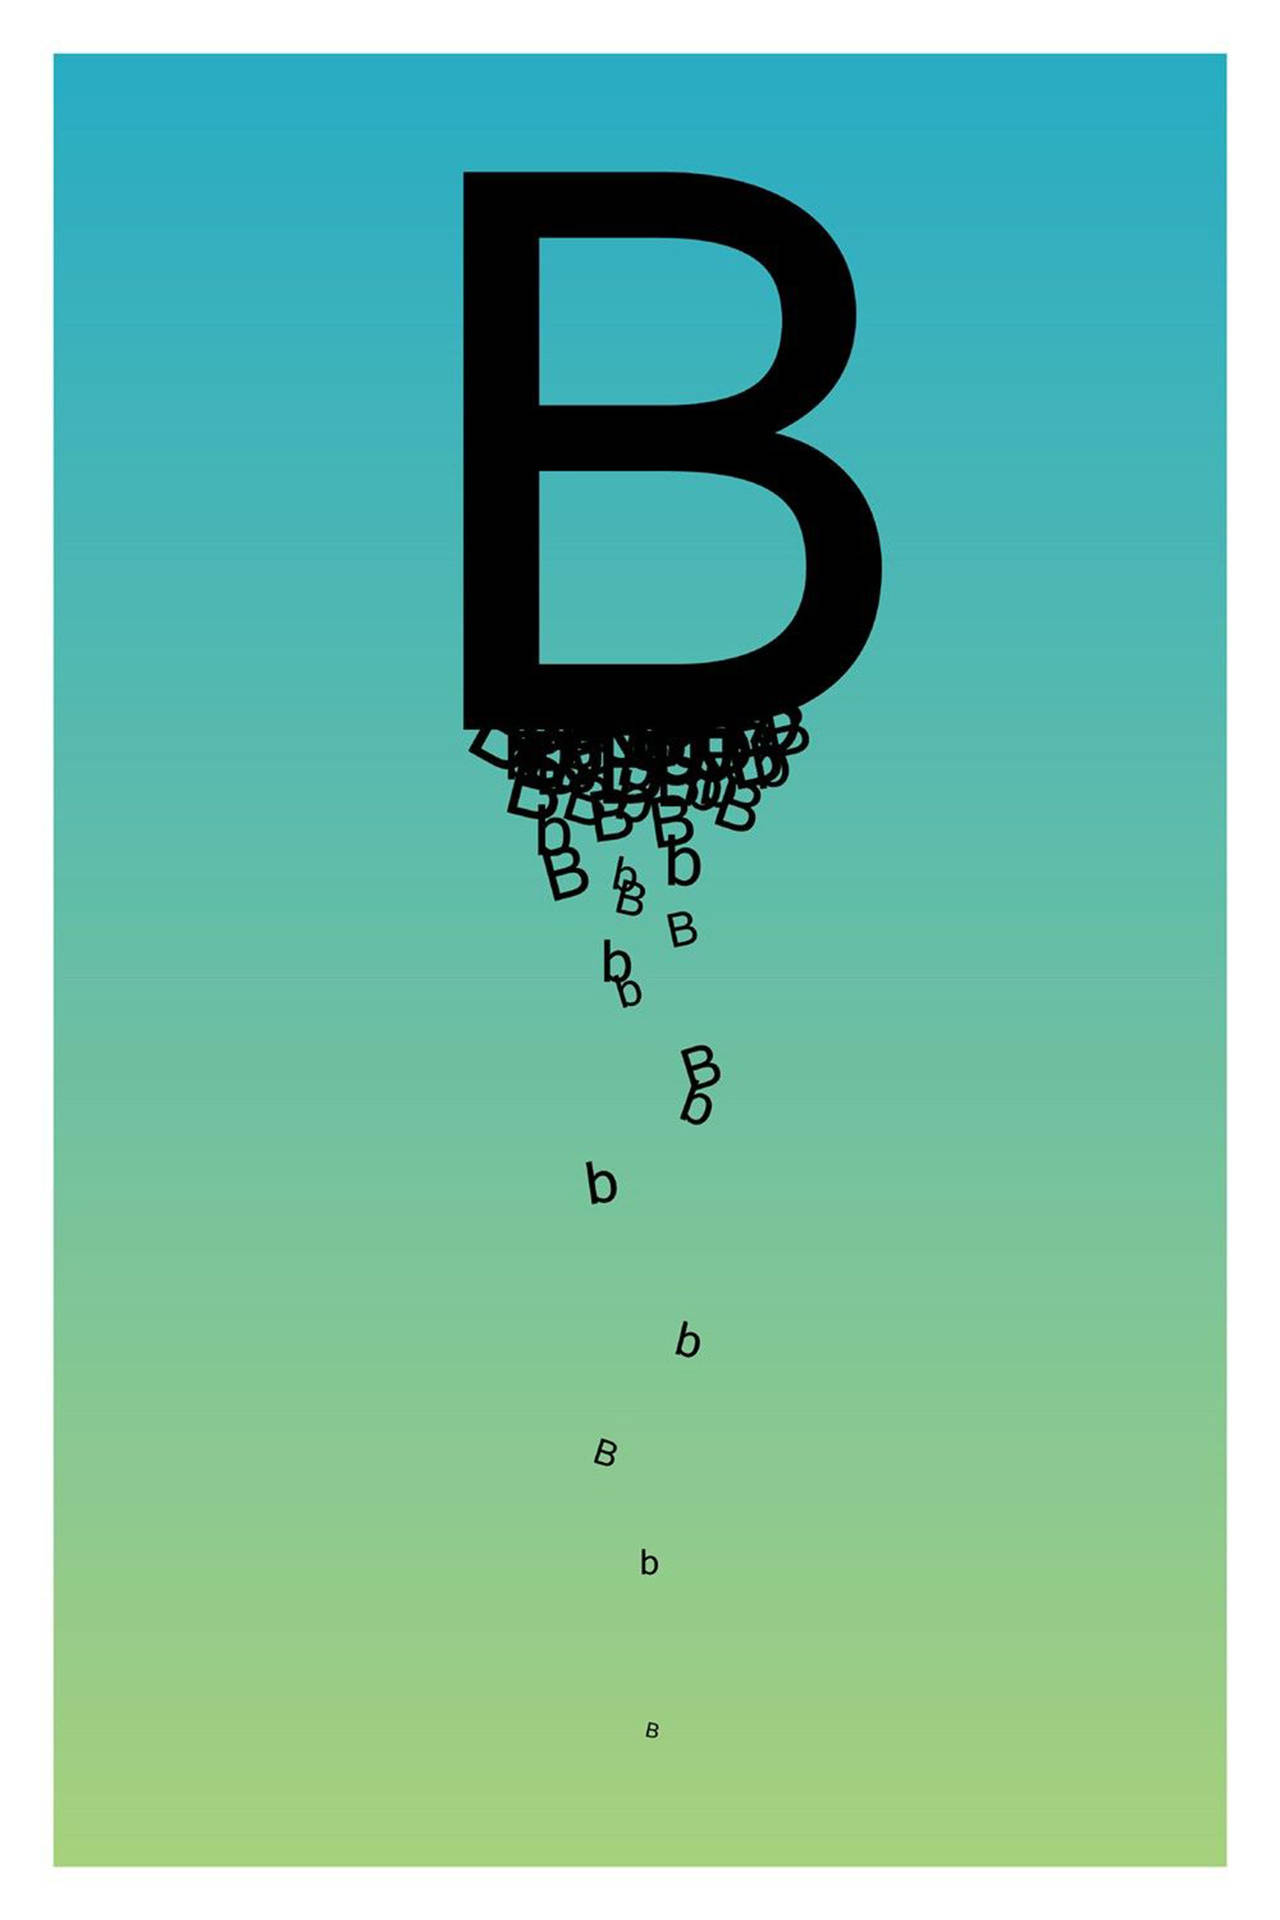 Animated Letter B Wallpaper